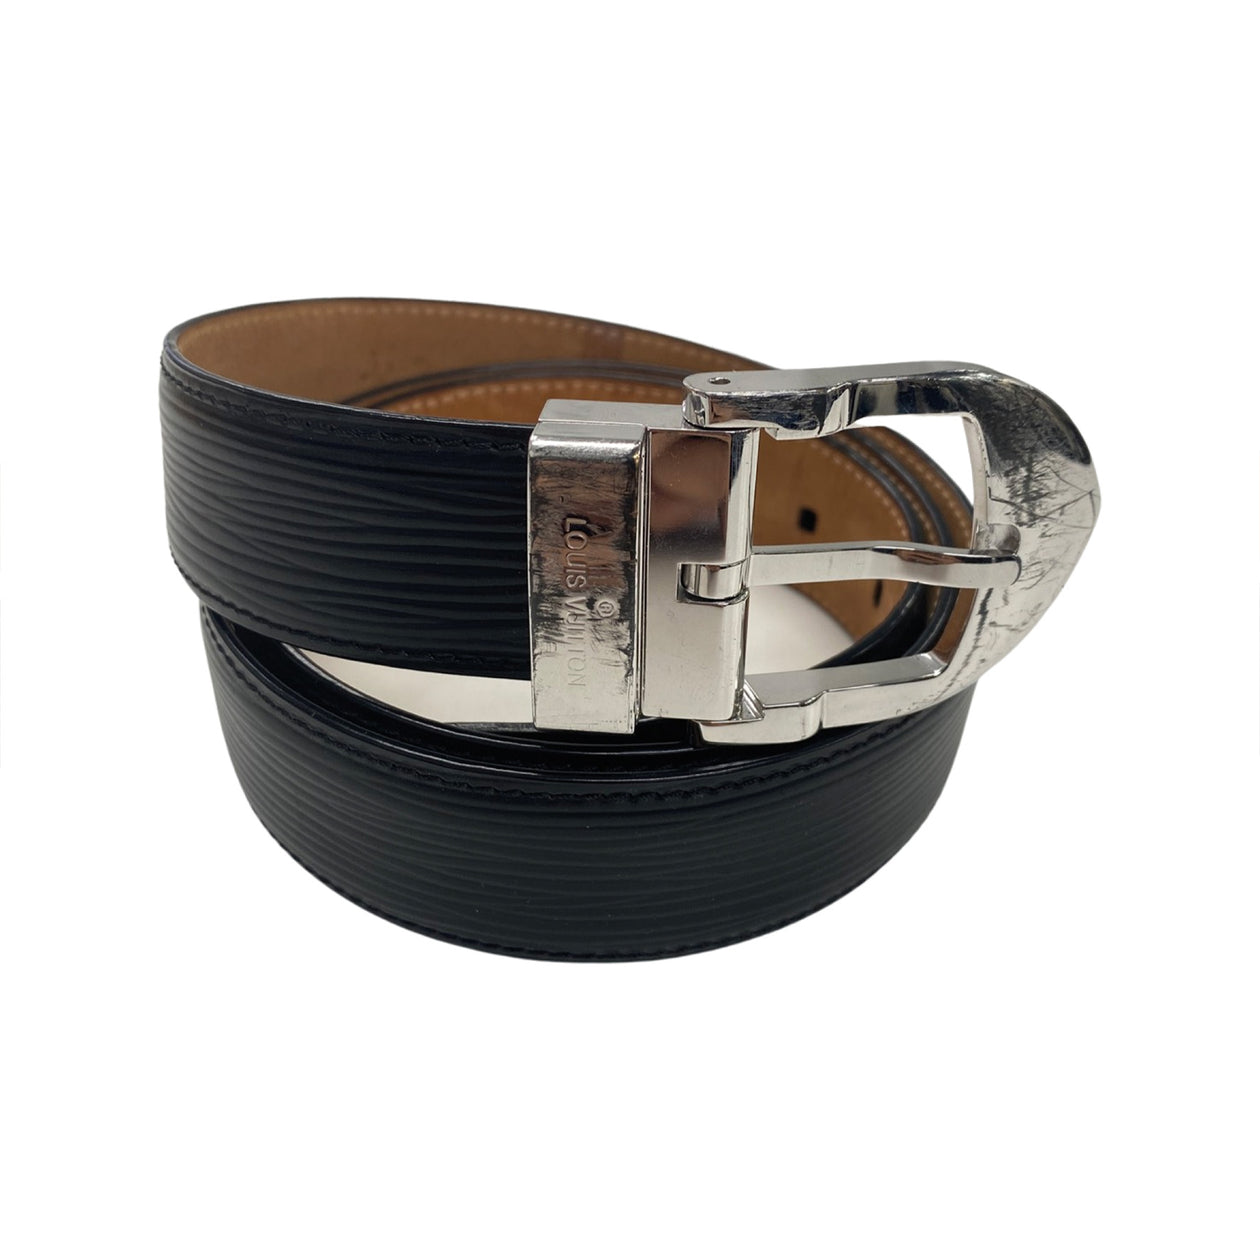 Men's Louis Vuitton Belts, Preowned & Secondhand